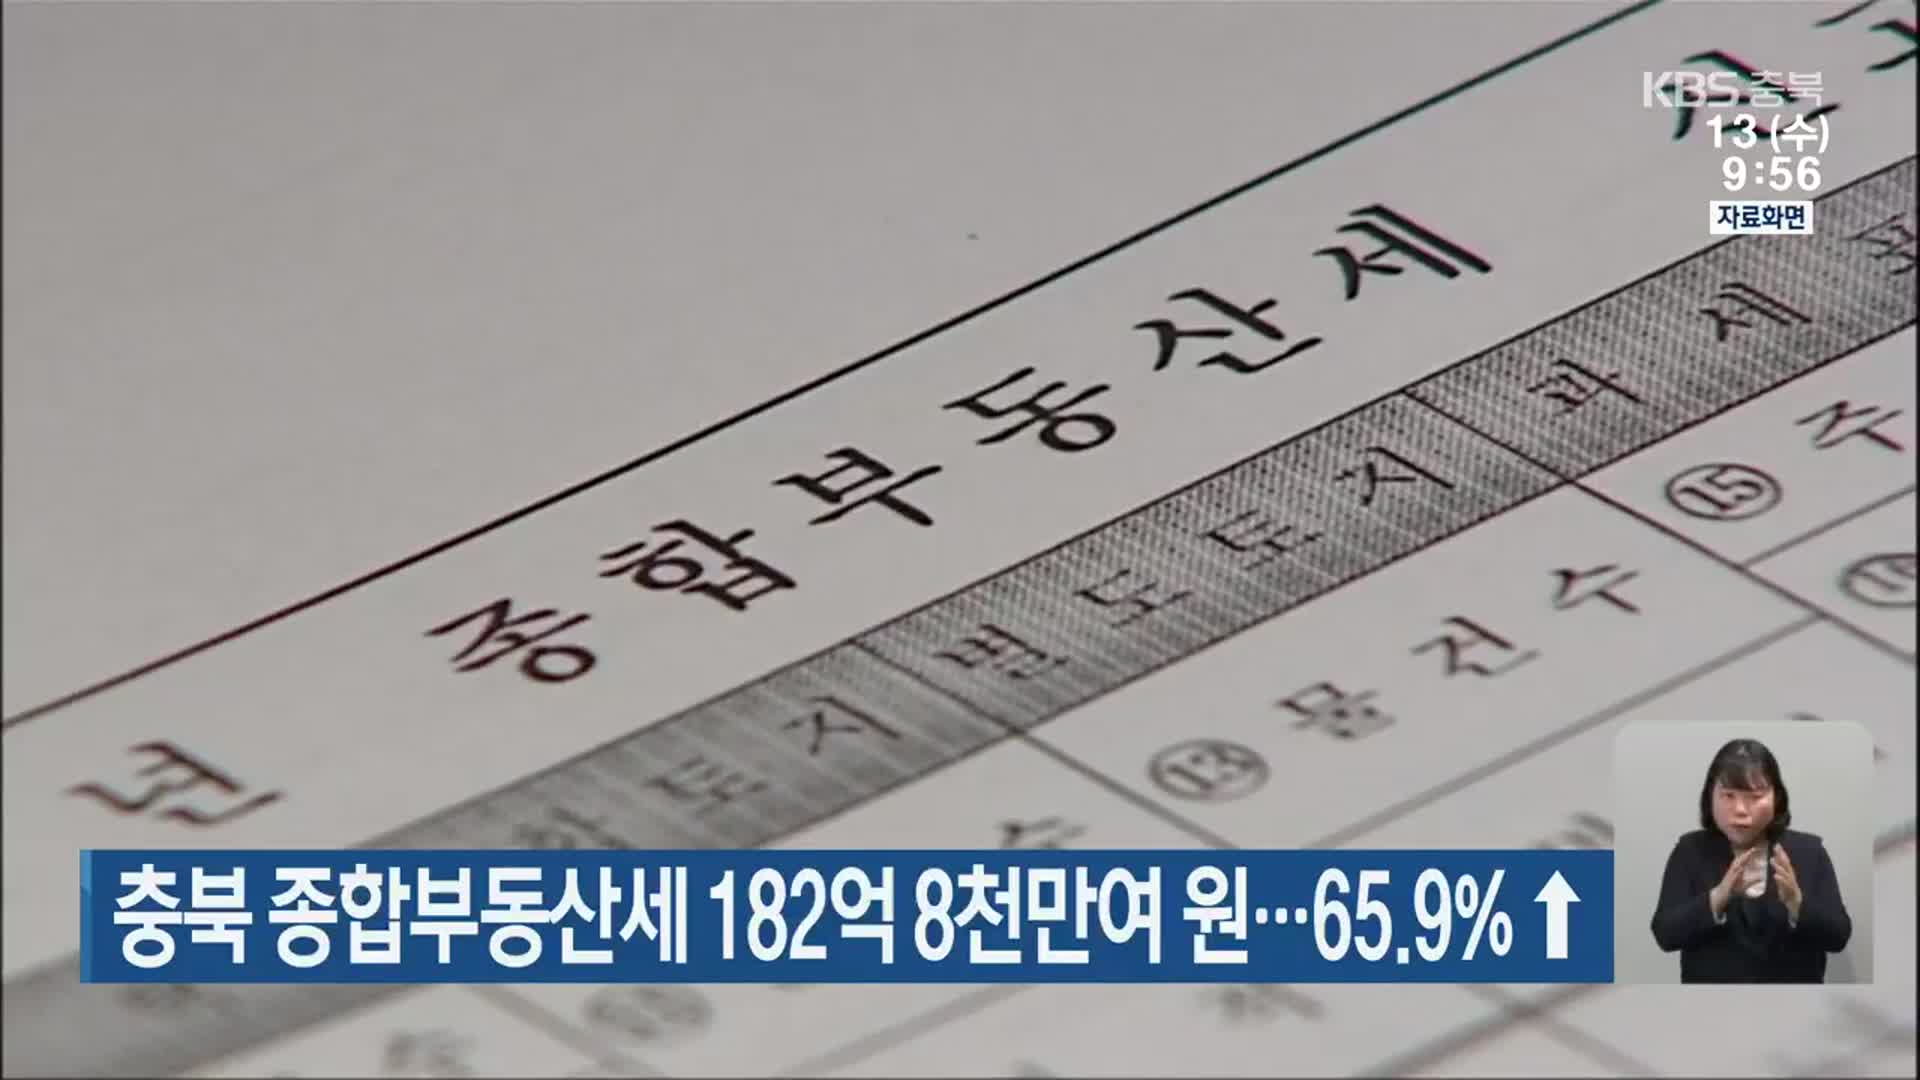 충북 종합부동산세 182억 8천만여 원…65.9%↑